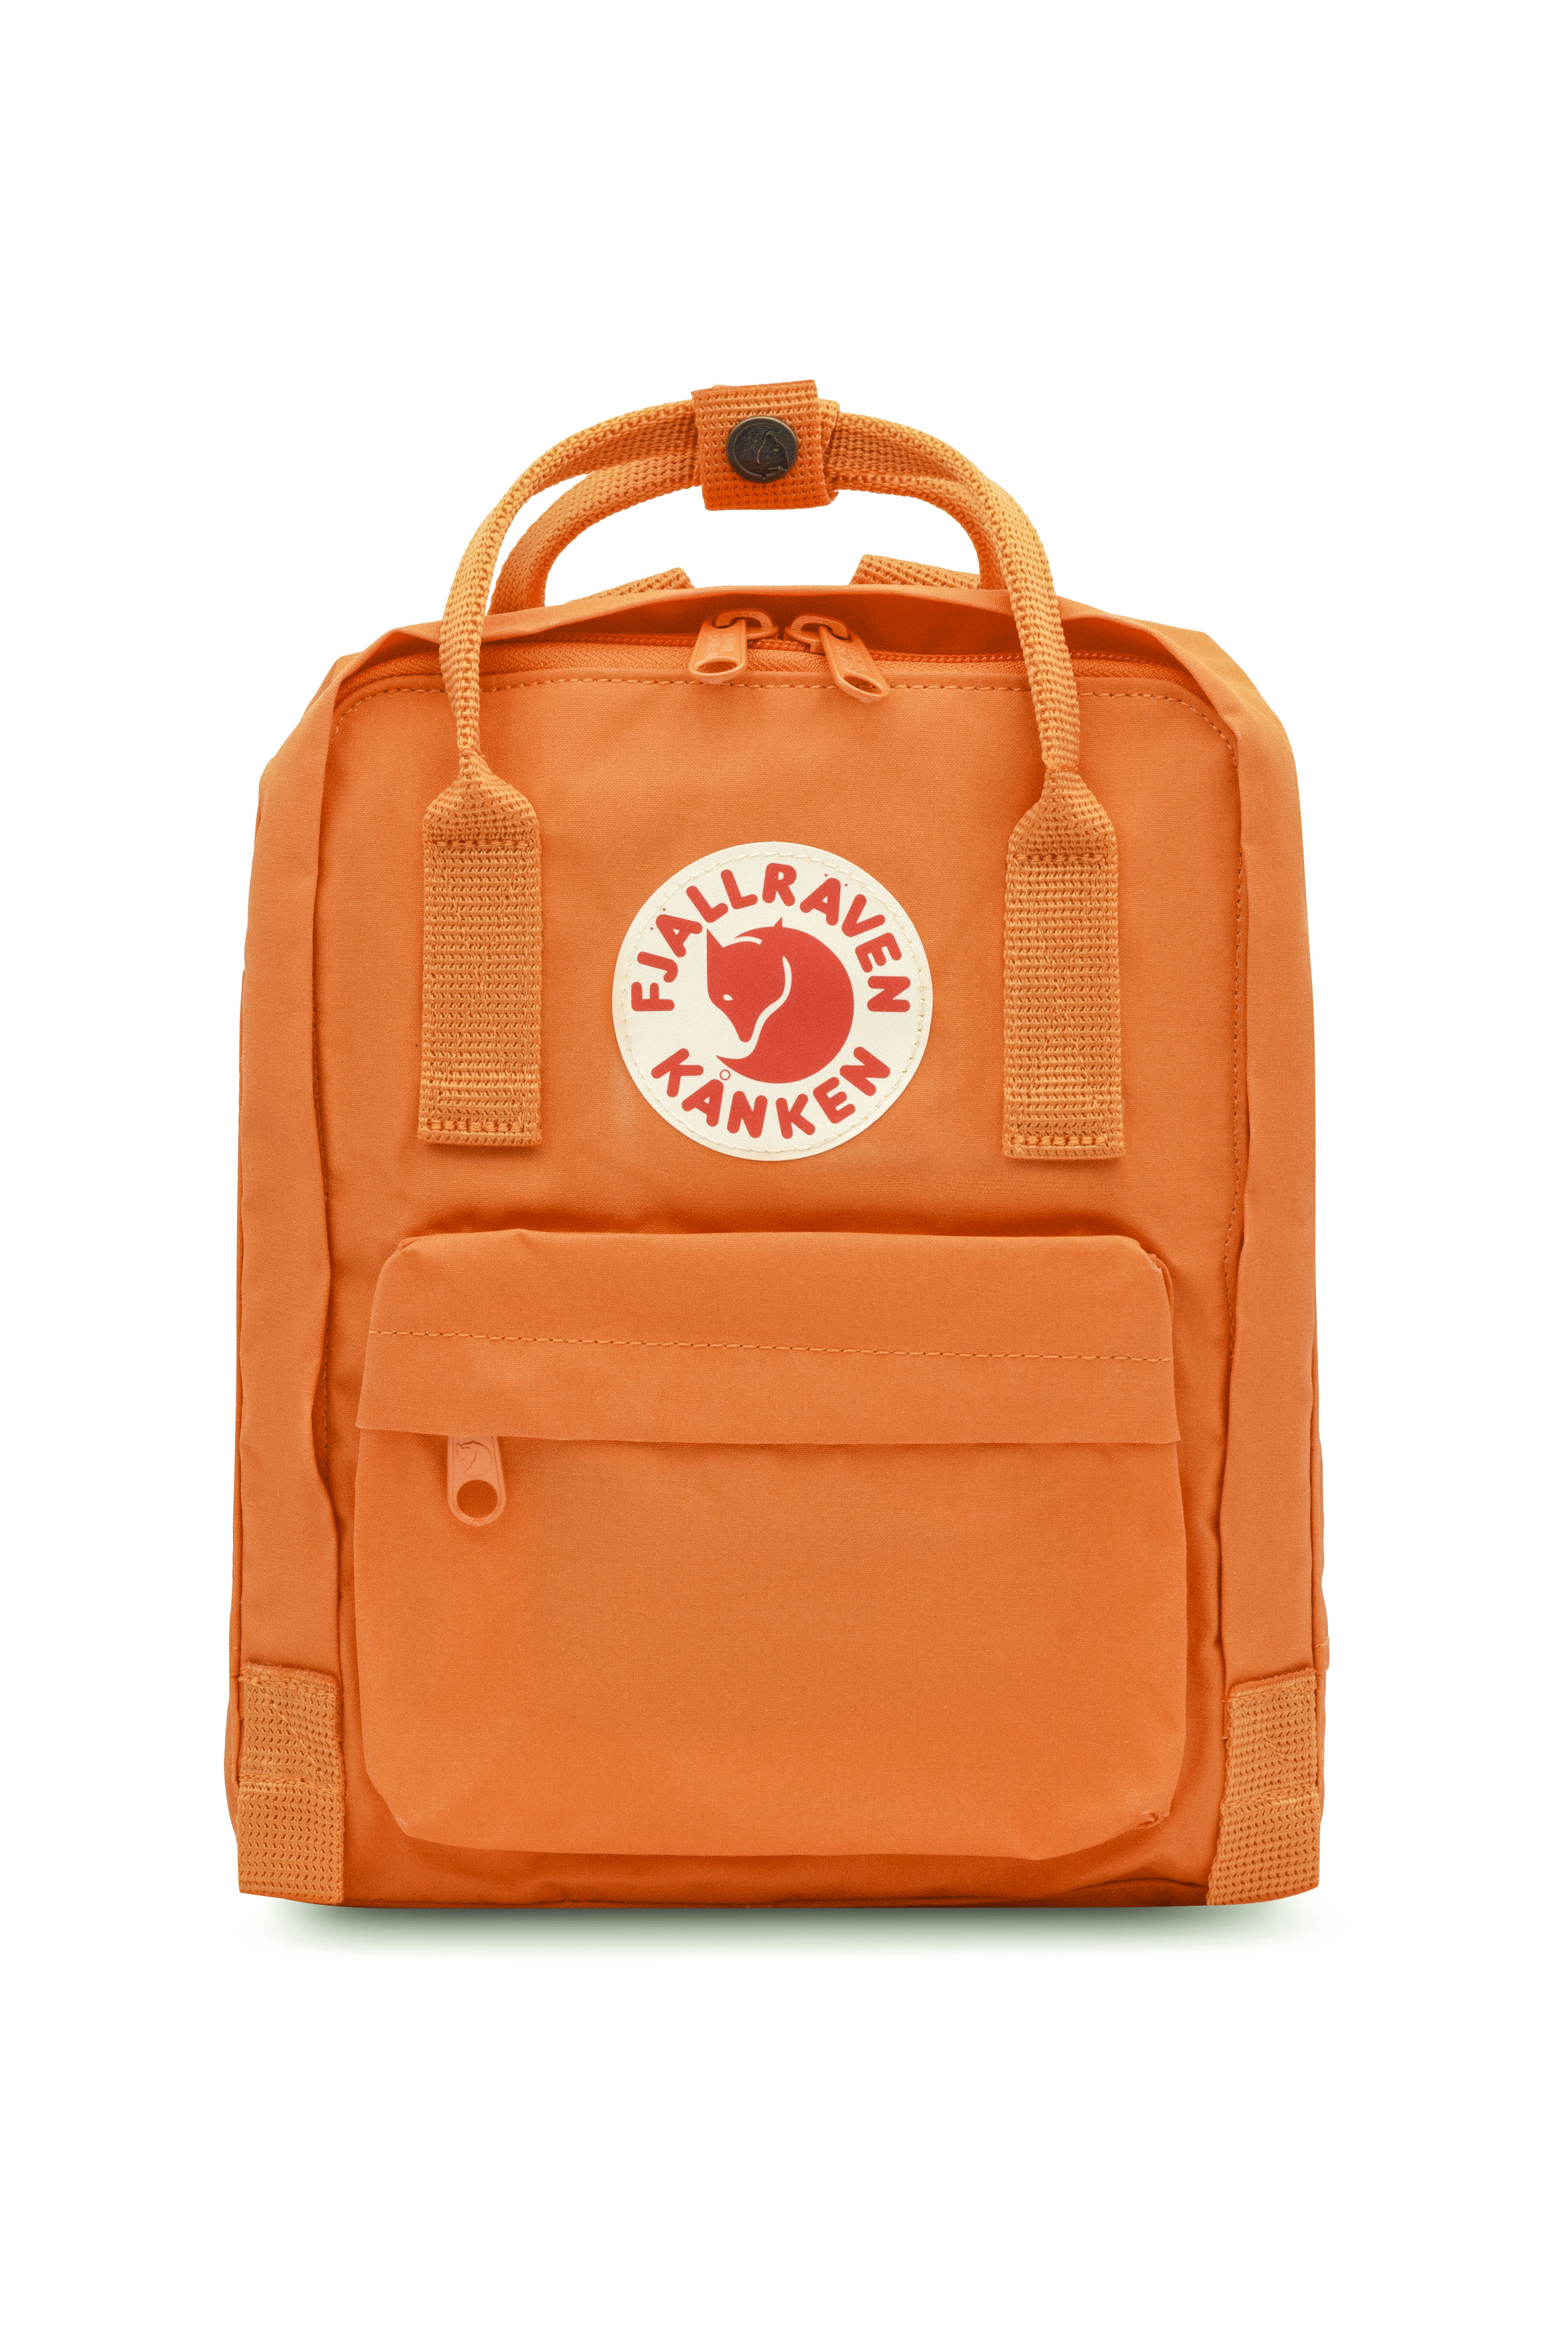 Fjallraven - Kanken Mini Classic Backpack for Everyday - Burnt Orange ...